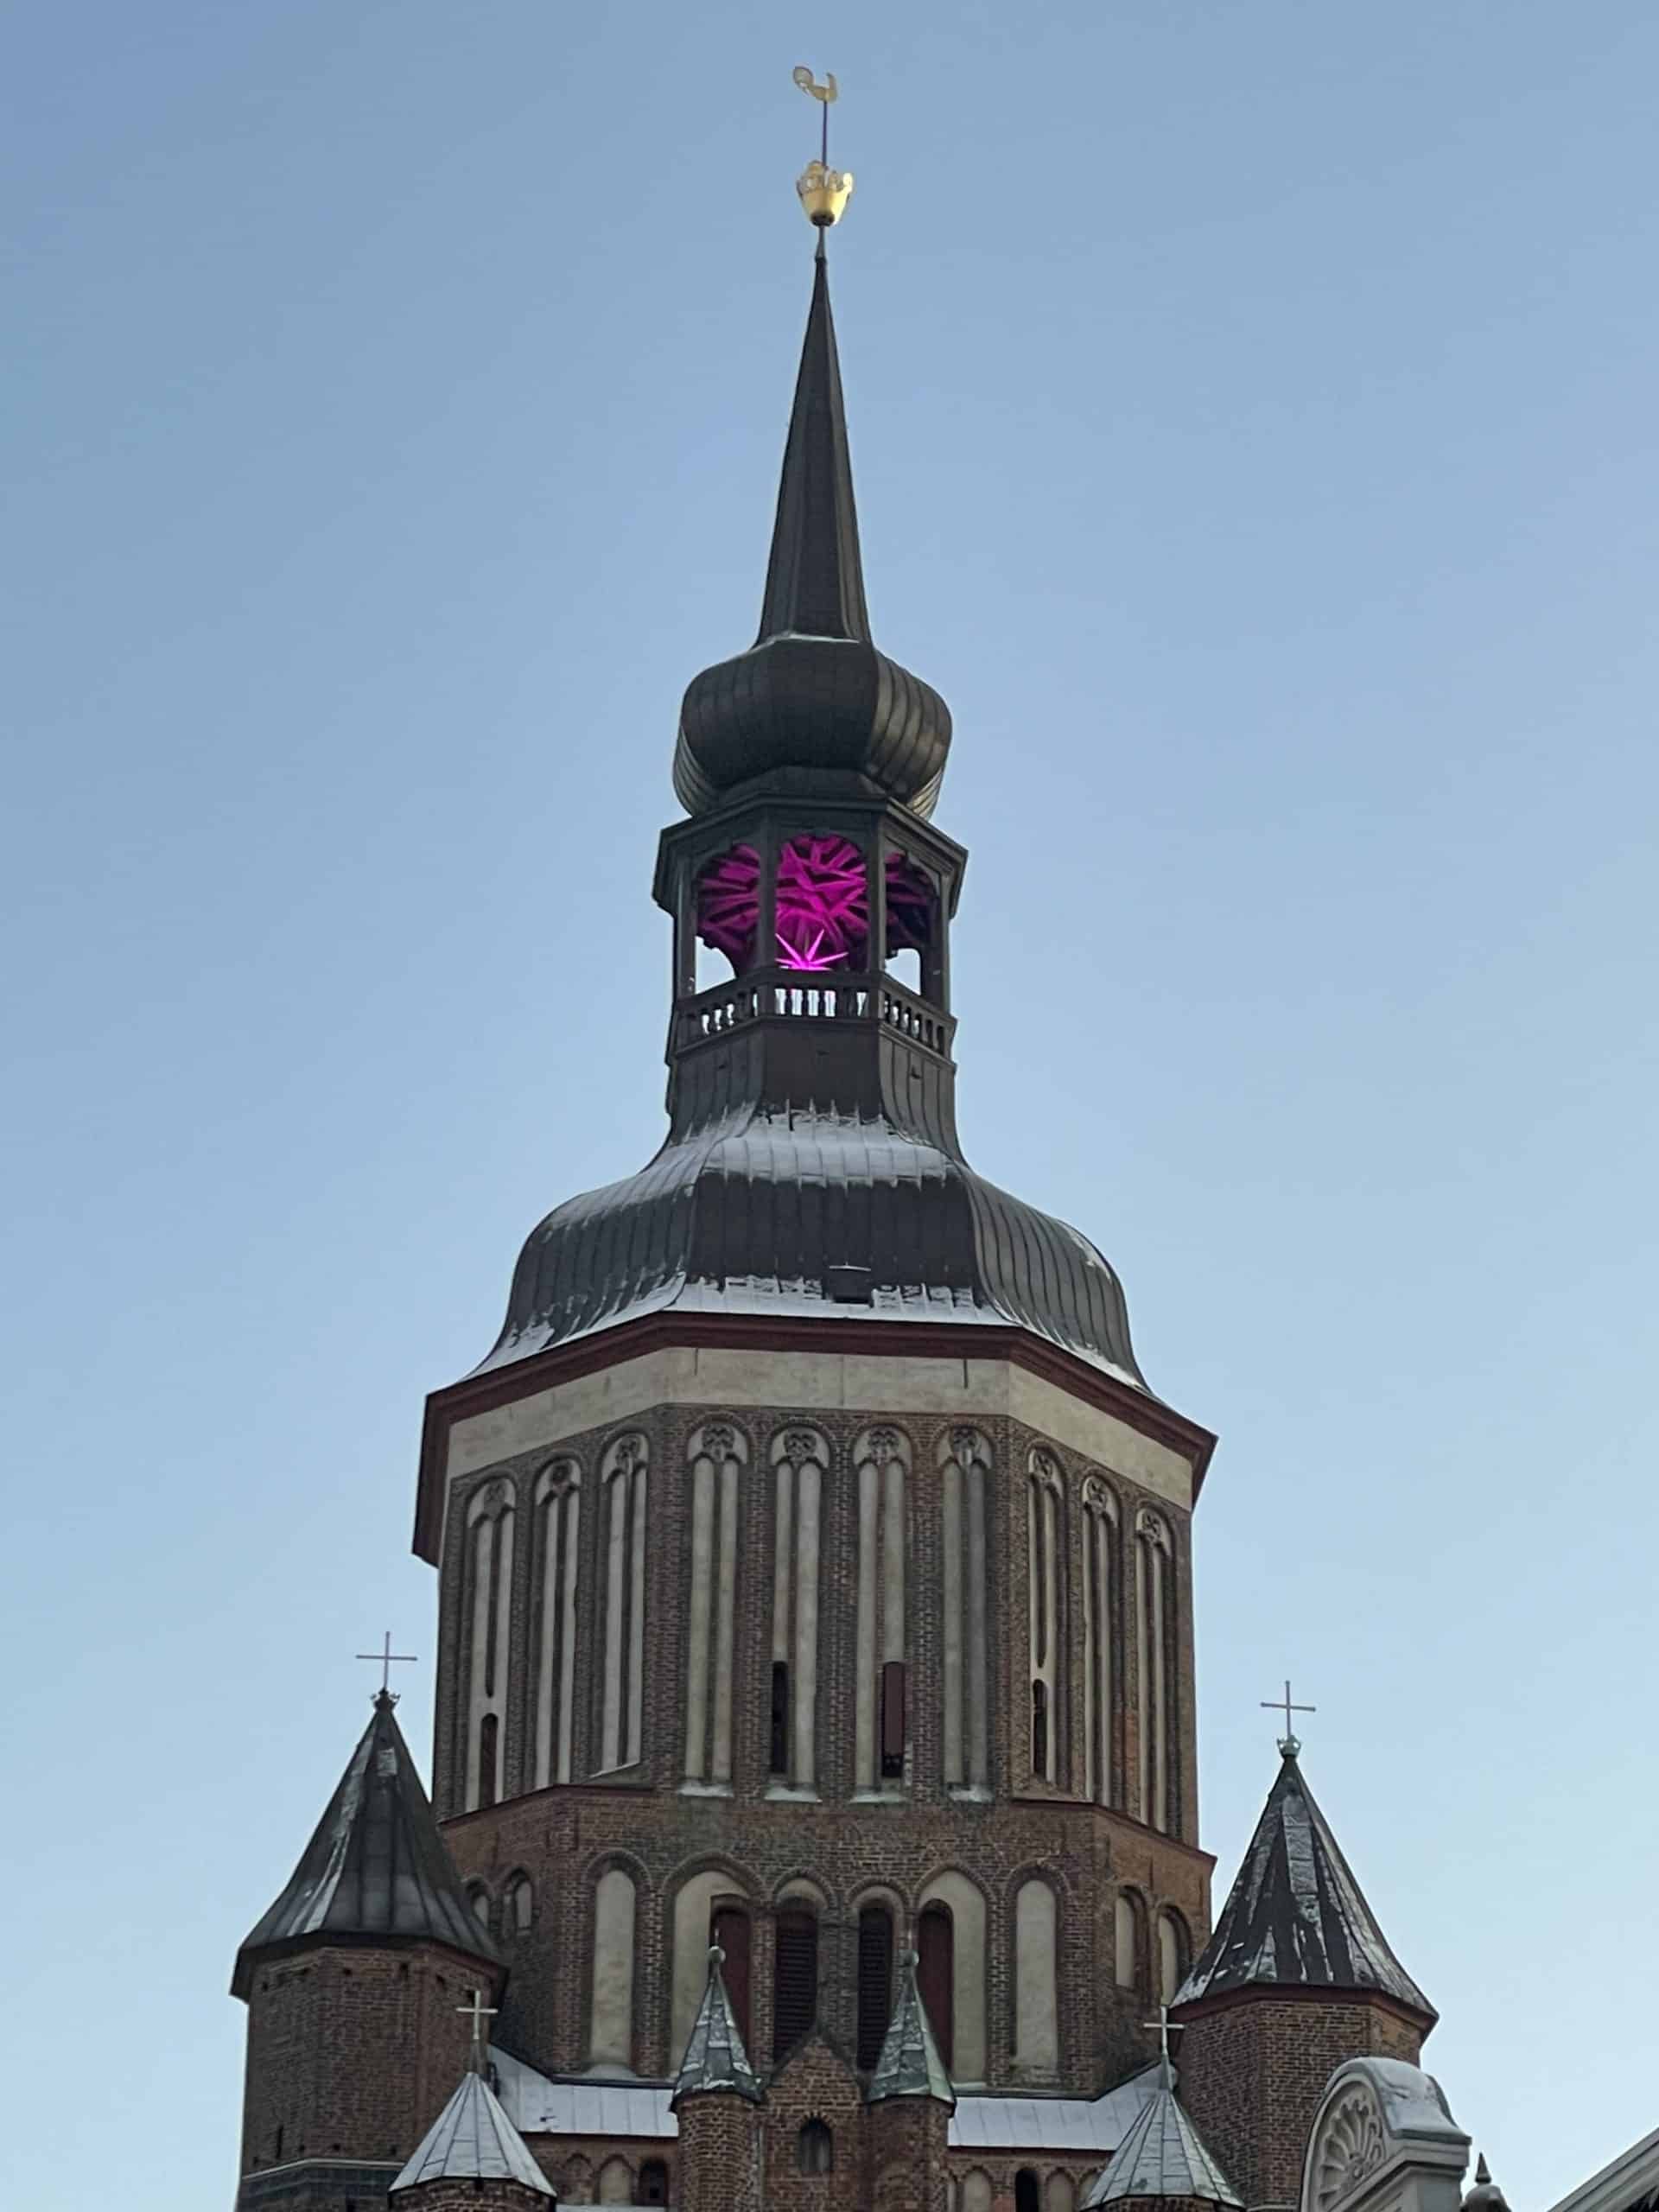 Kirchenturm mit Weihnachtsstern in Magenta in der Kuppel